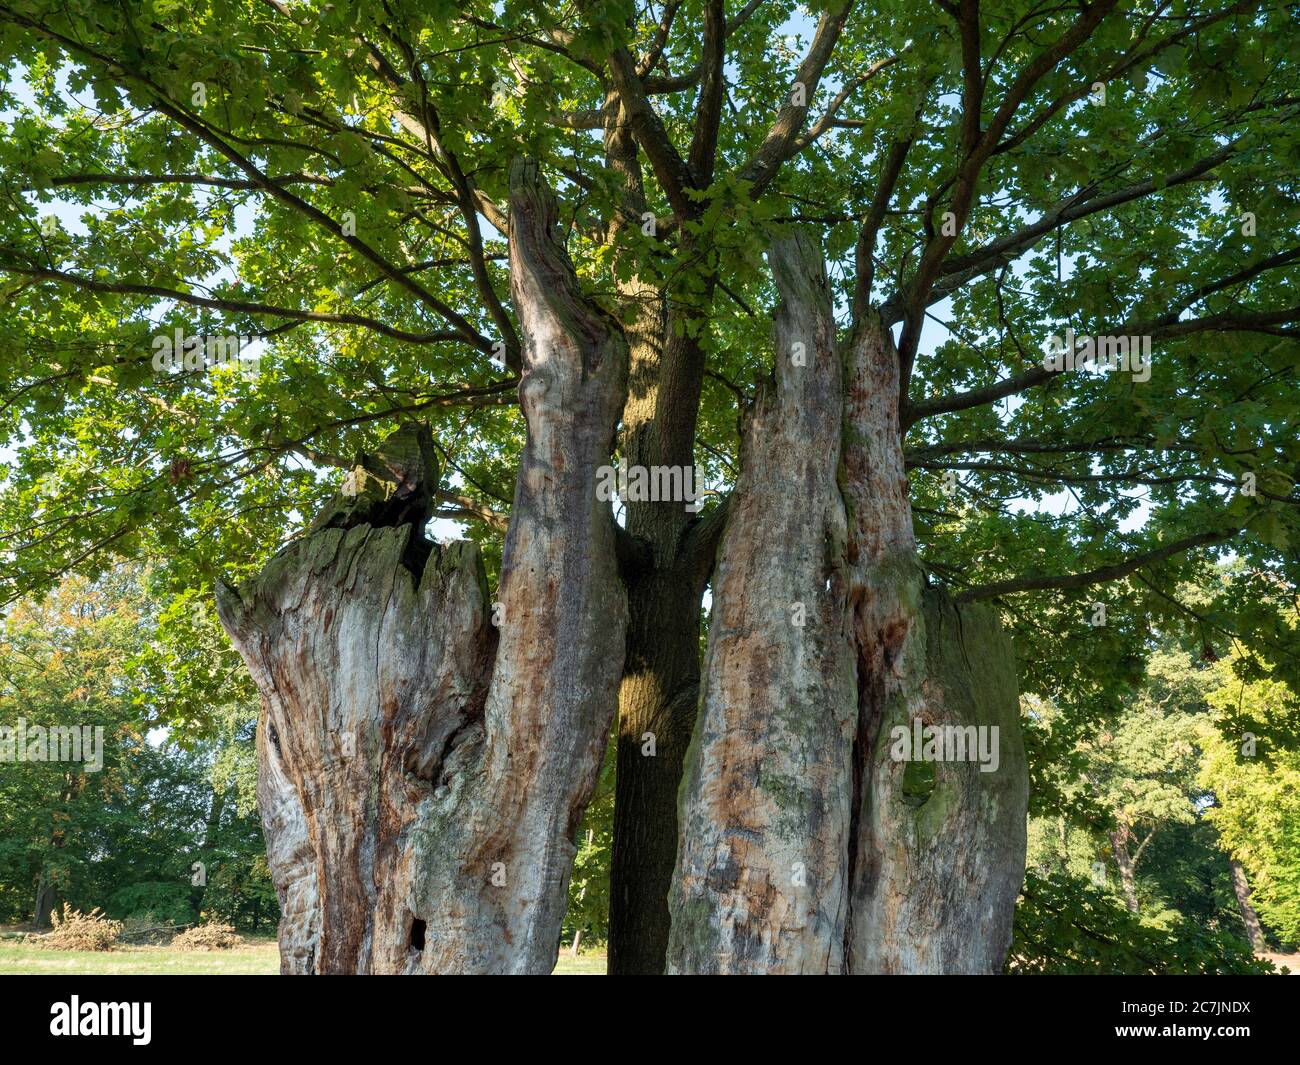 Jungbaum wächst im alten Hohlbaummark, Muskauer Park, UNESCO Weltkulturerbe, Bad Muskau, Oberlausitz, Sachsen, Deutschland Stockfoto